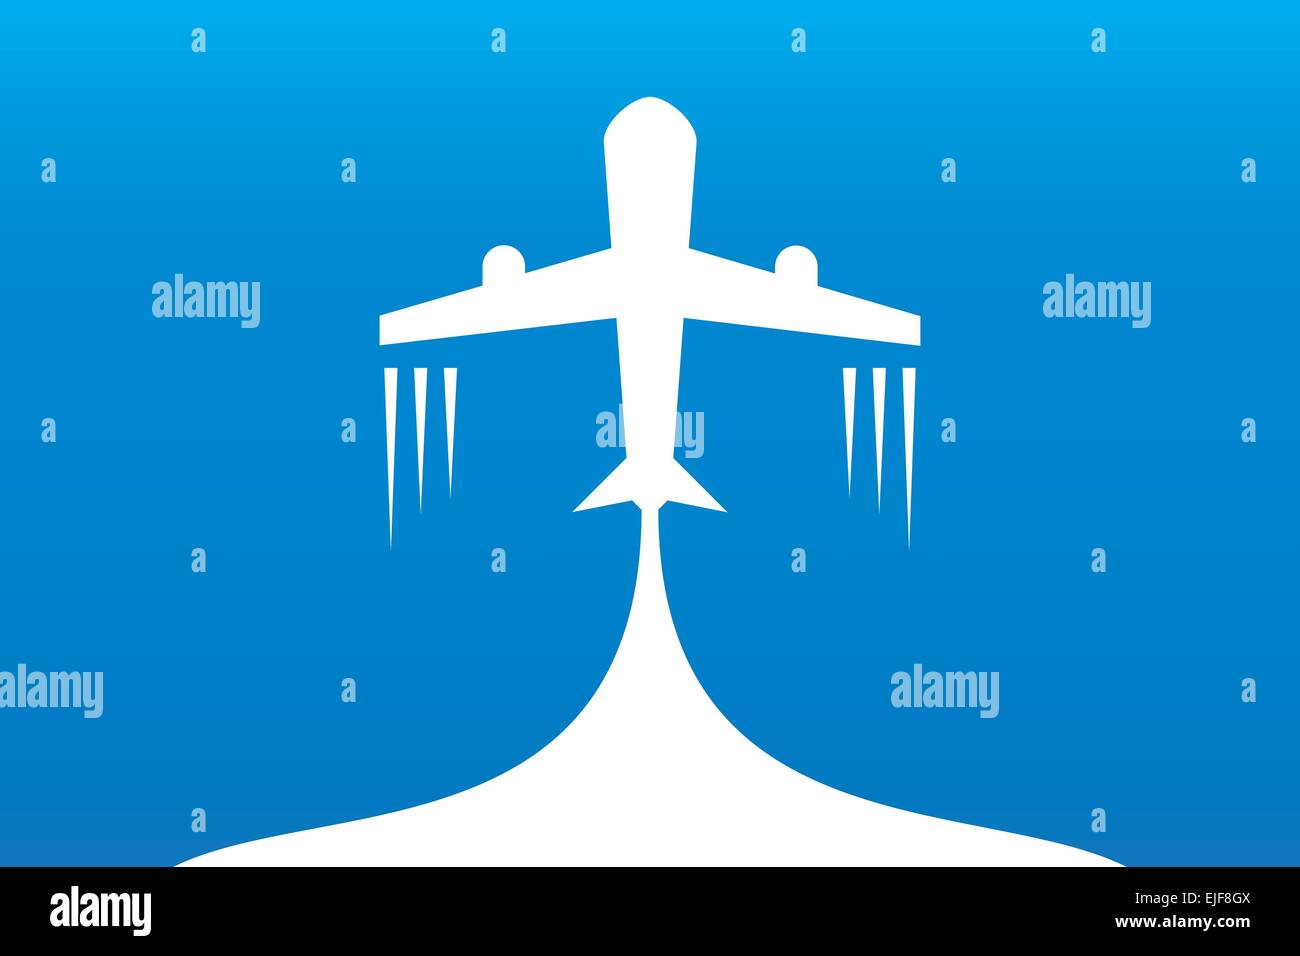 Airplane - vector logo concept. Aircraft illustration. Stock Vector